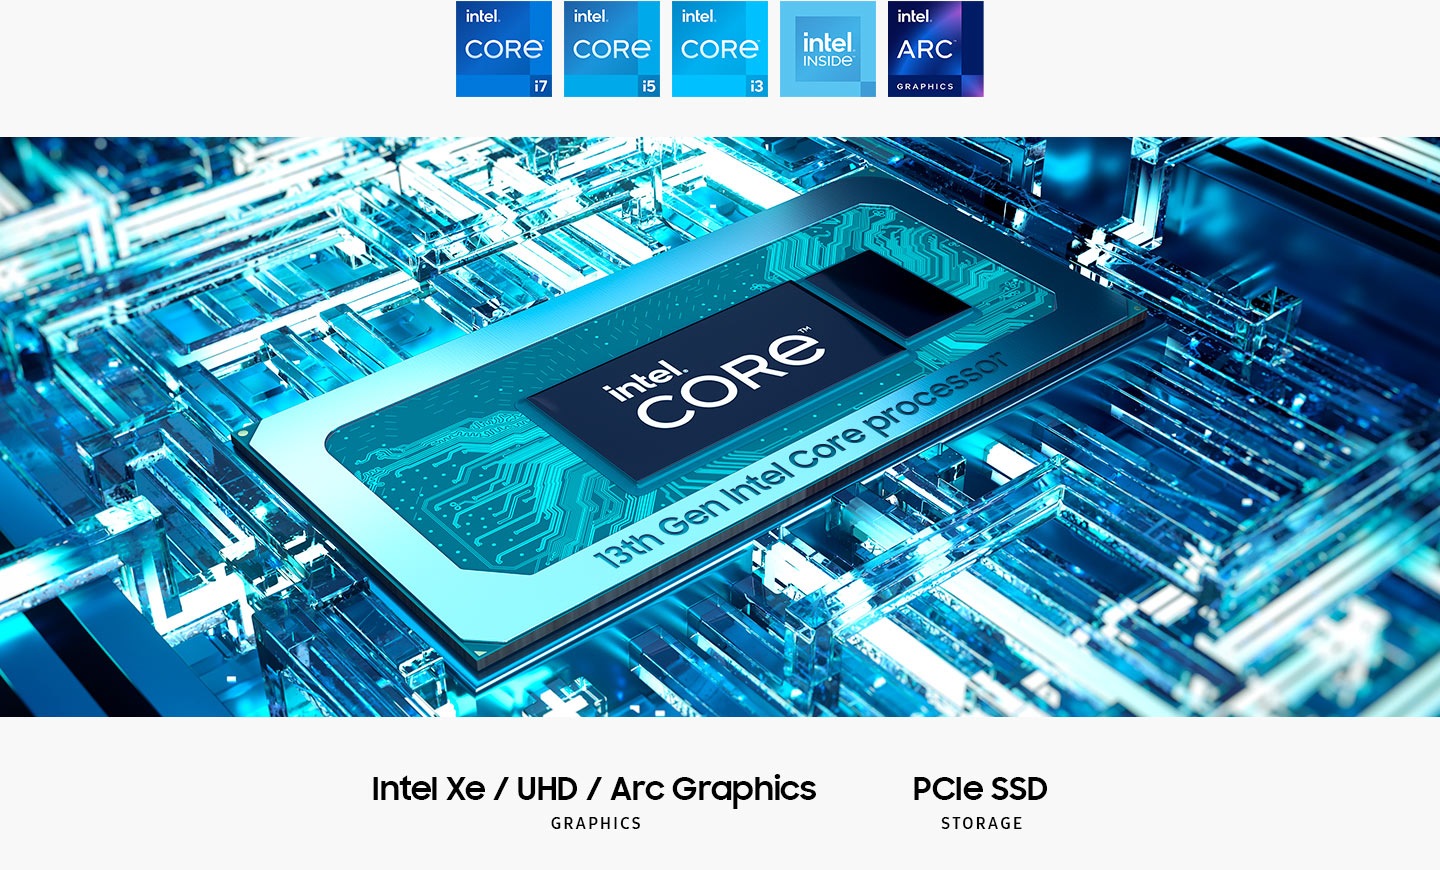 13-cü nəsil Intel ® Core ™ prosessoru, ortada Intel® Core ™ mətni ilə anakartındadır. Intel XE / UHD / ARC qrafikası. PCIE SSD saxlama. Intel Core I7 loqotipləri, Intel Core I5, Intel Core I3, Intel İçəridə və Intel Arc qrafikası göstərilir